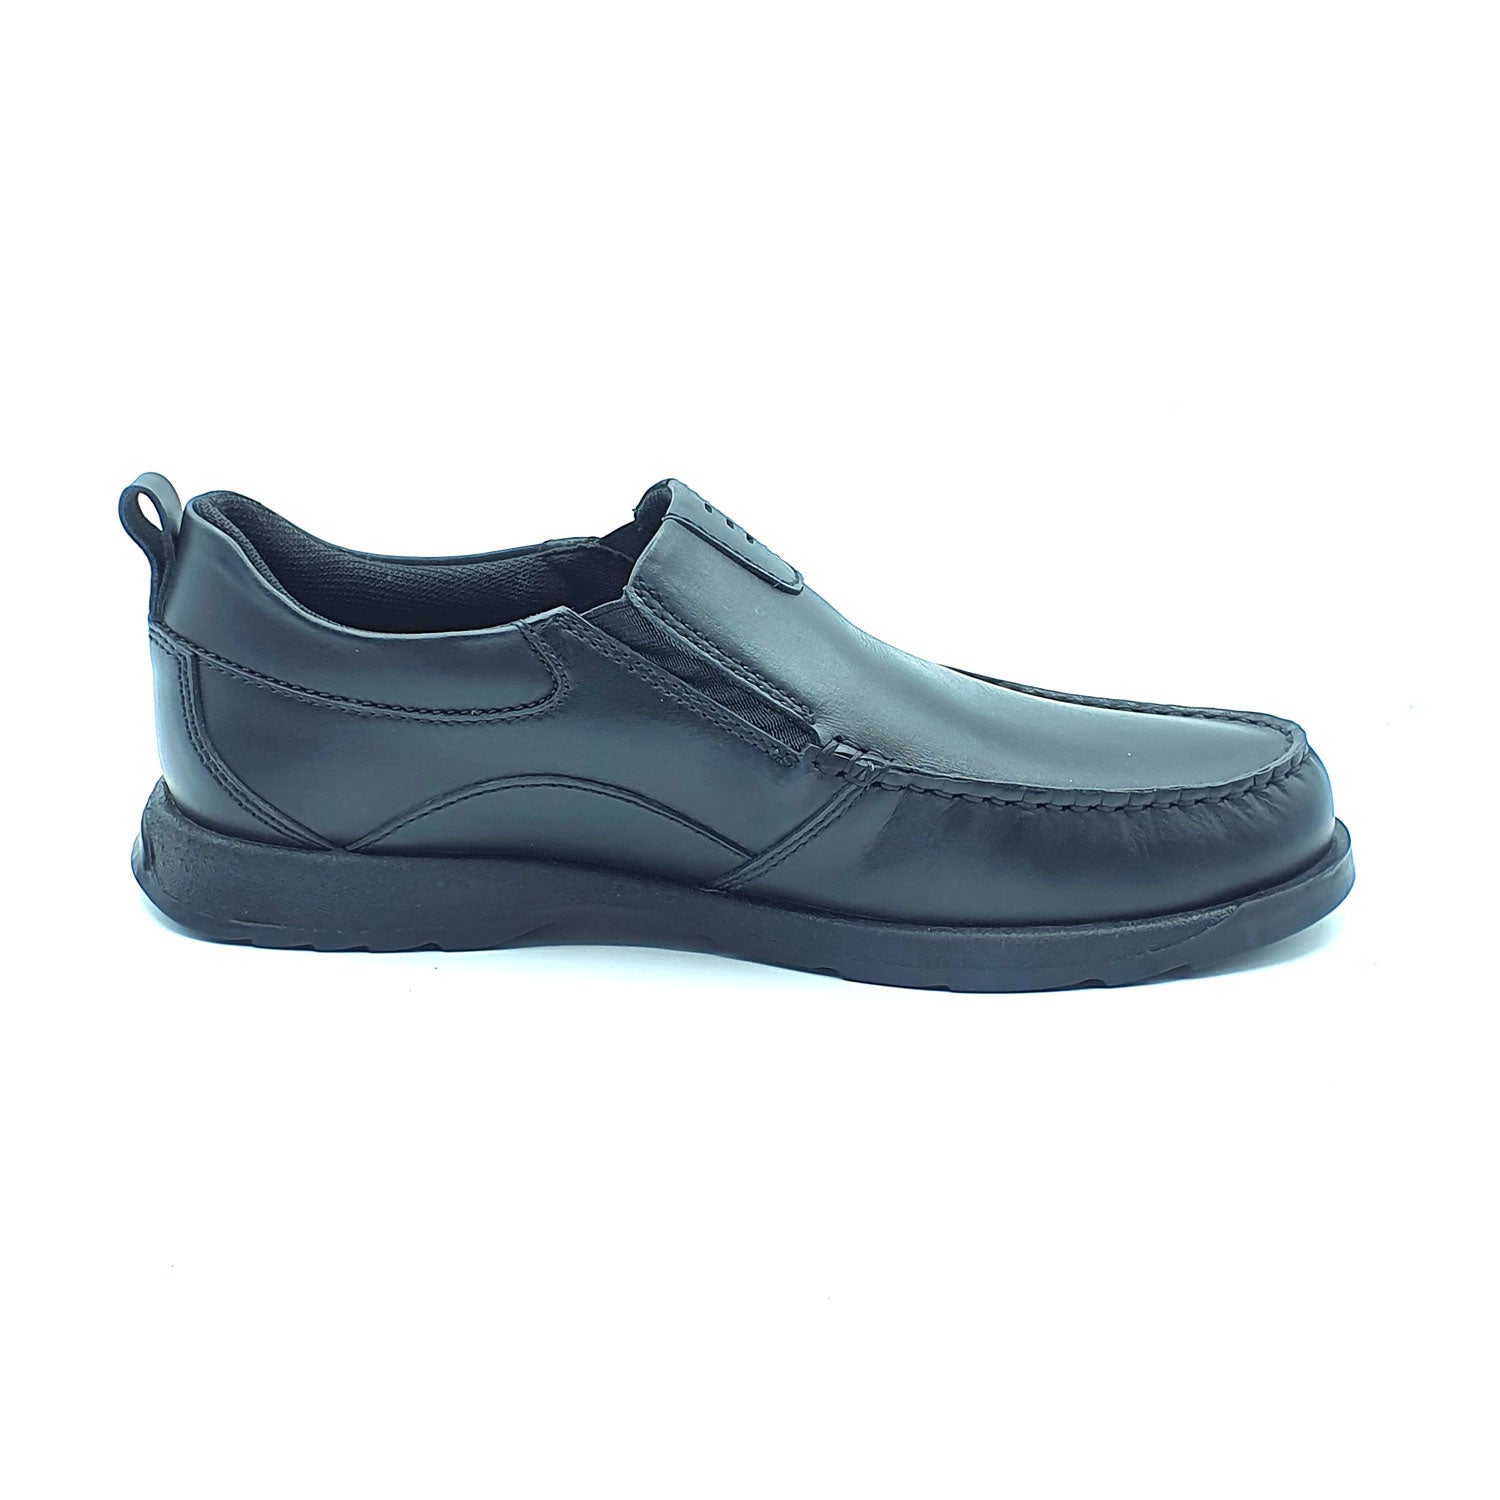 Dubarry Karter Slip On Av8 Shoe - Black 5 Shaws Department Stores